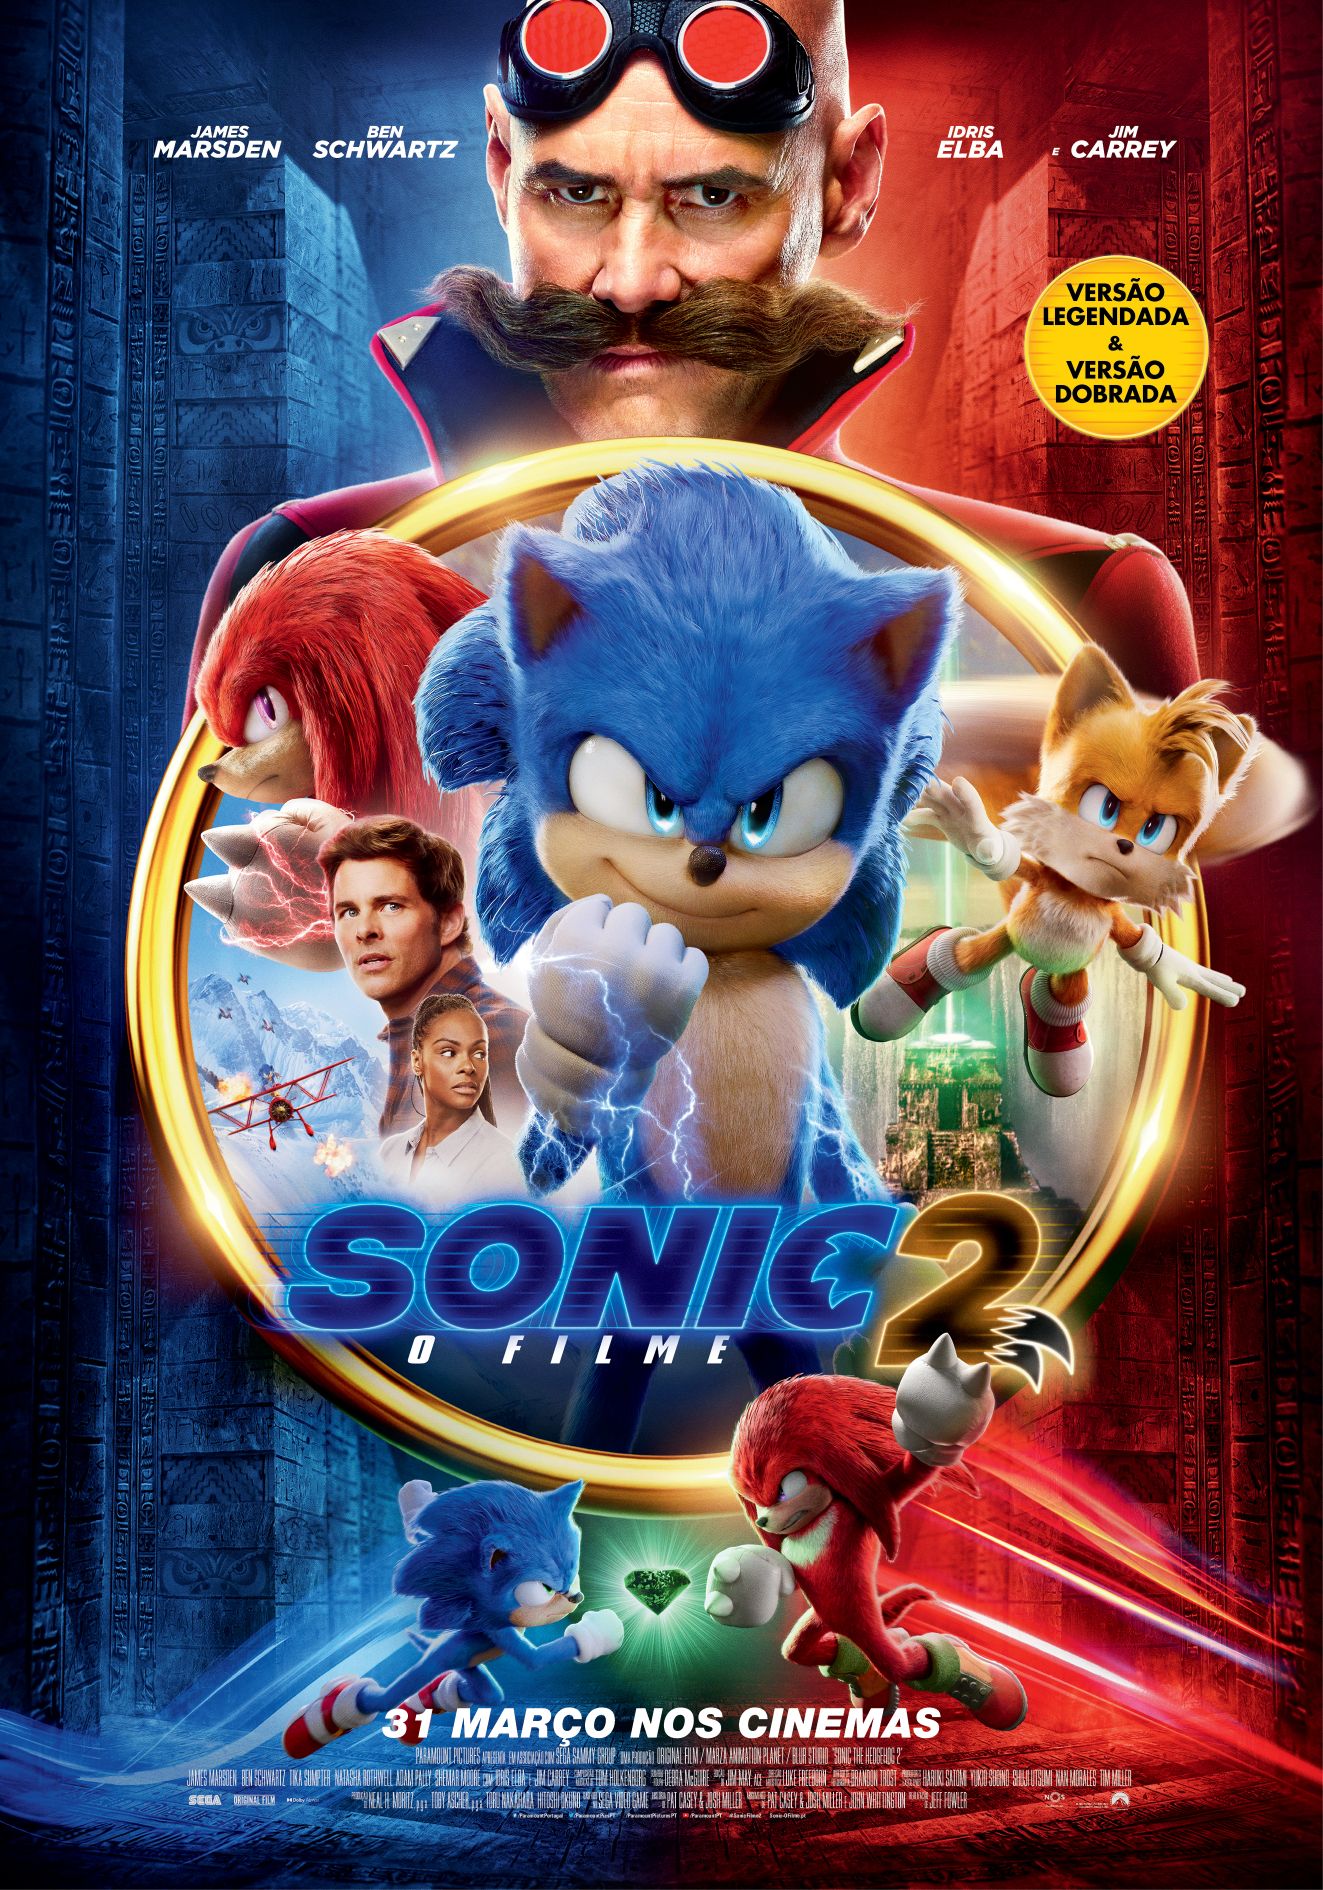 Superpôster Cinema e Séries - Sonic 2 - O Filme, de a Europa. Editora  Europa Ltda., capa mole em português, 2022